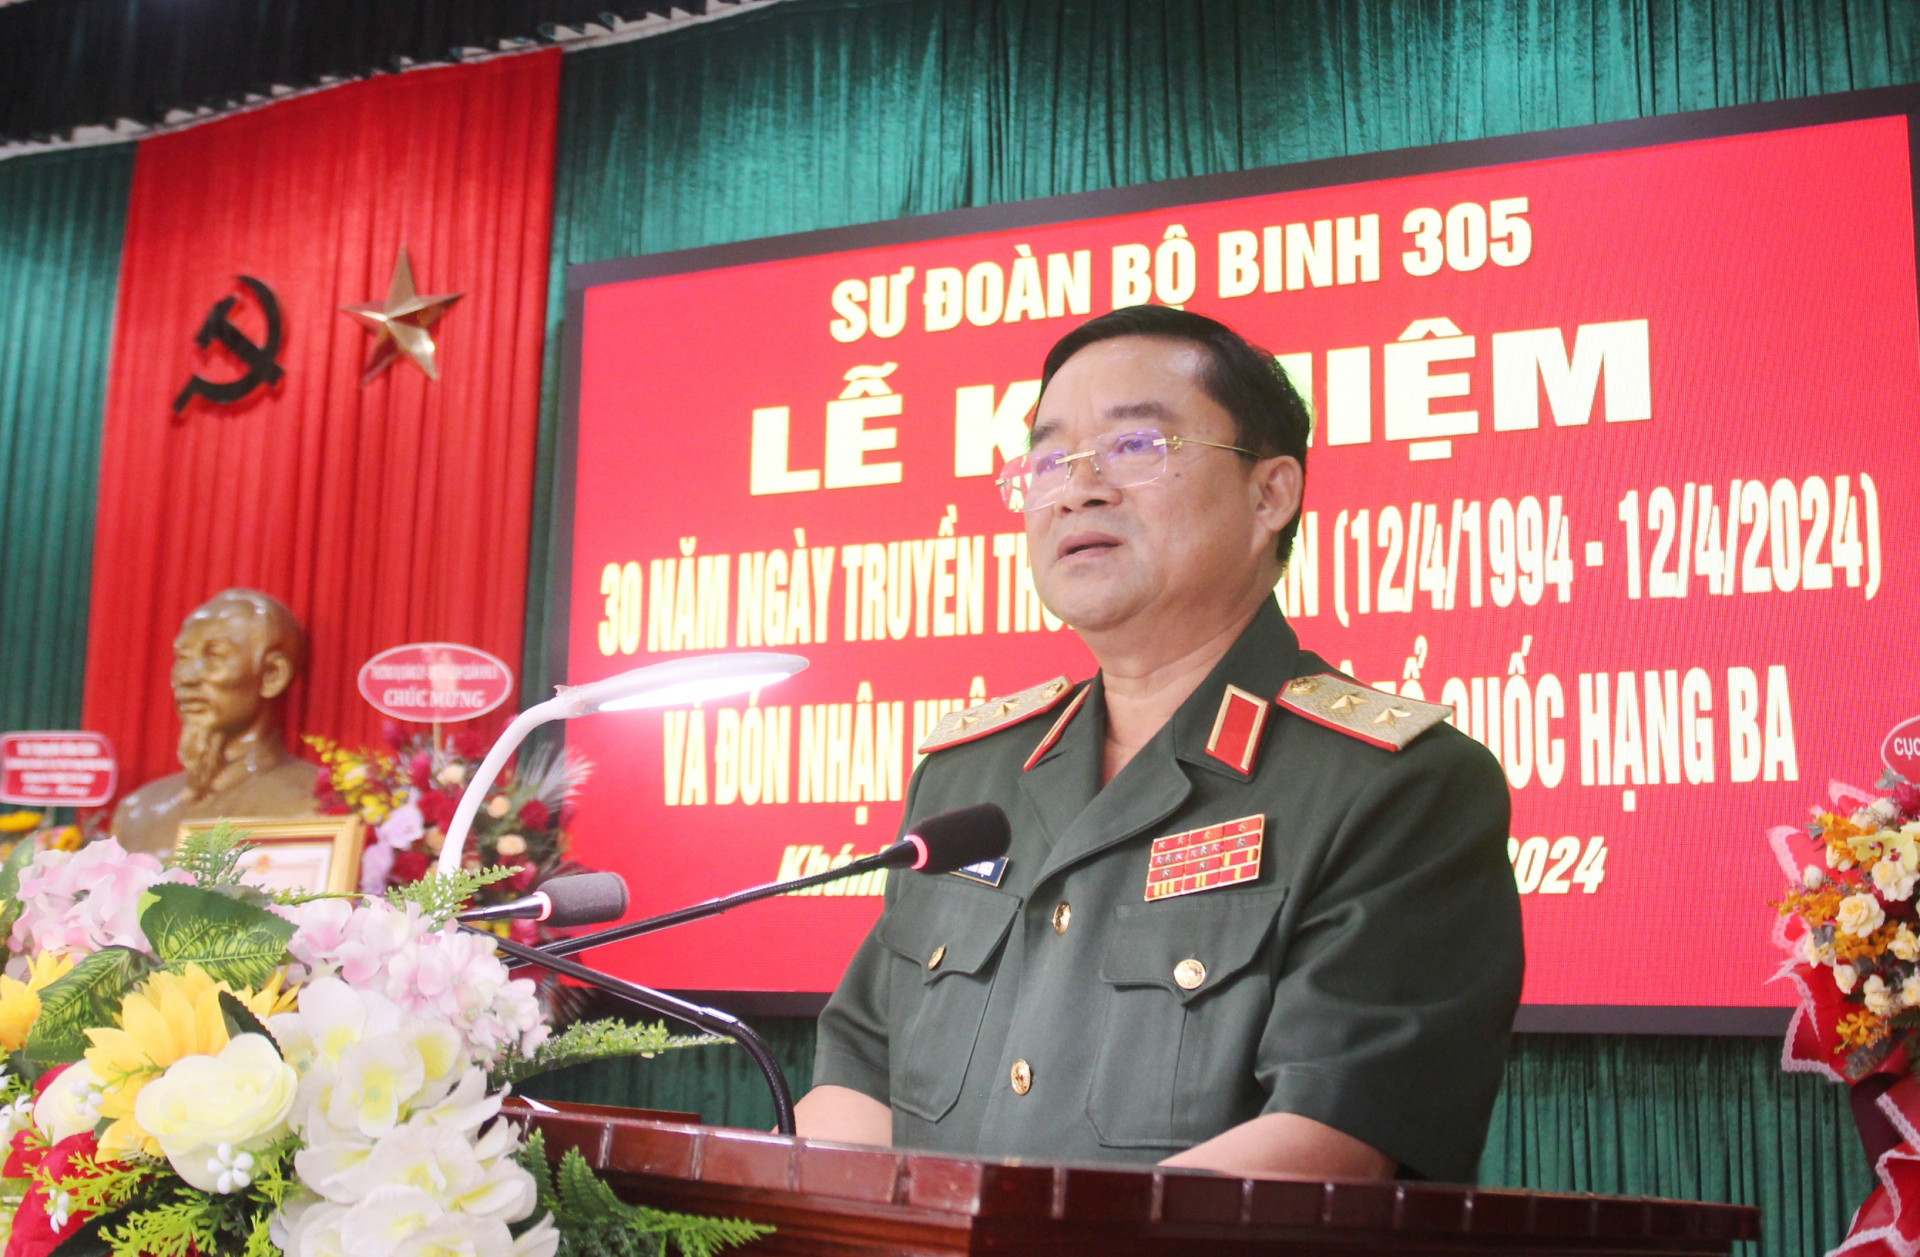 Trung tướng Trịnh Đình Thạch phát biểu tại buổi lễ.